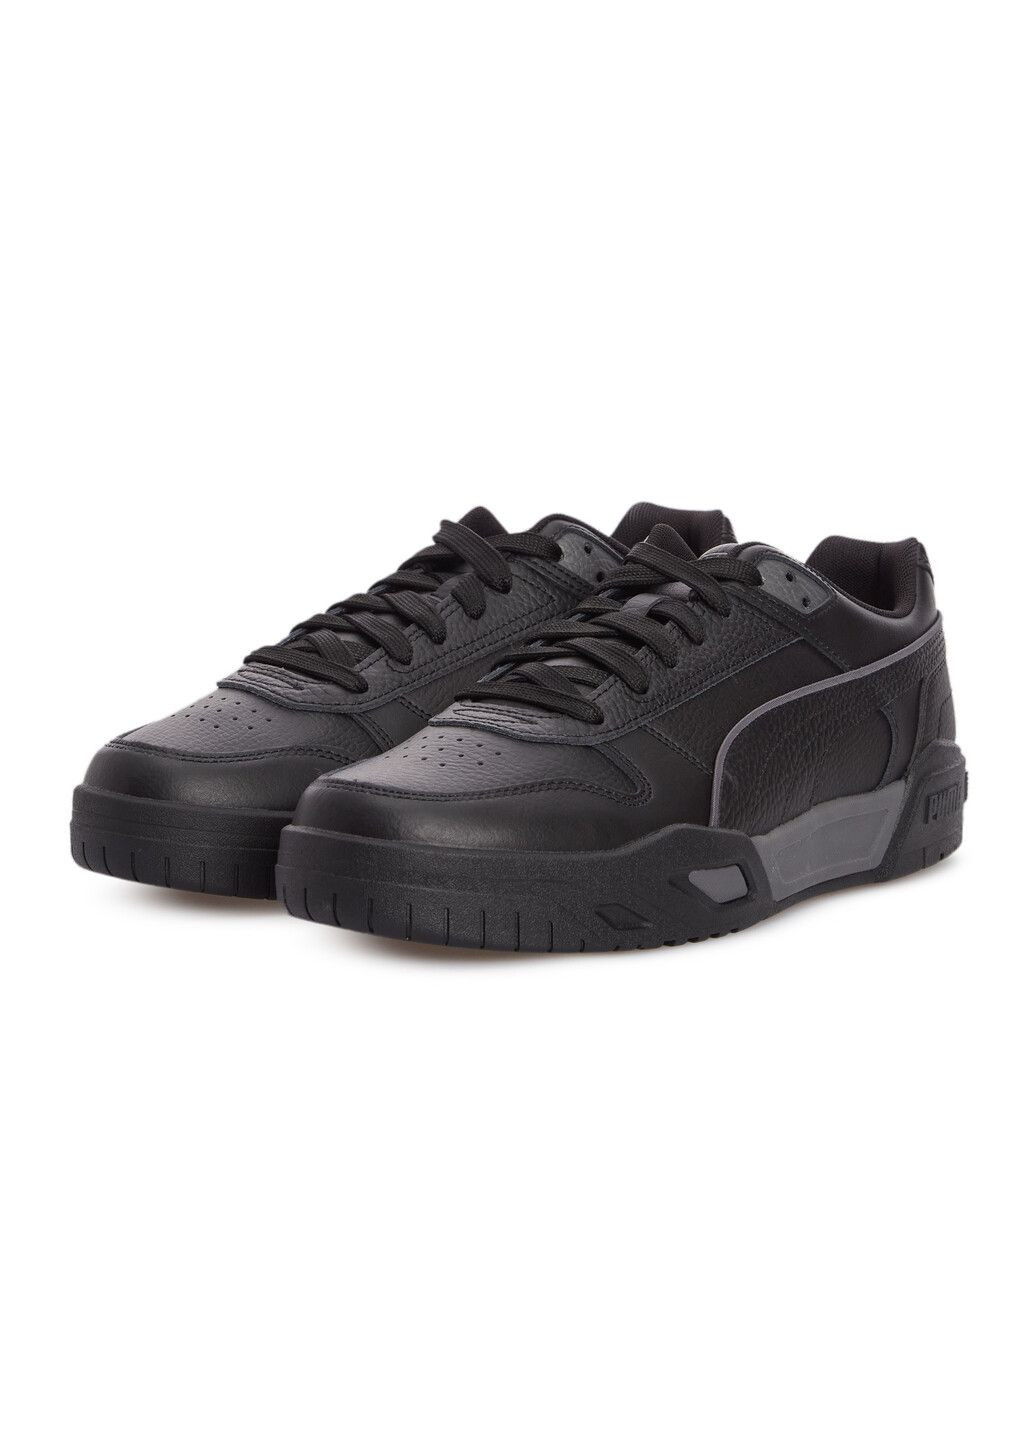 Черные всесезонные кеды rbd tech classic unisex sneakers Puma